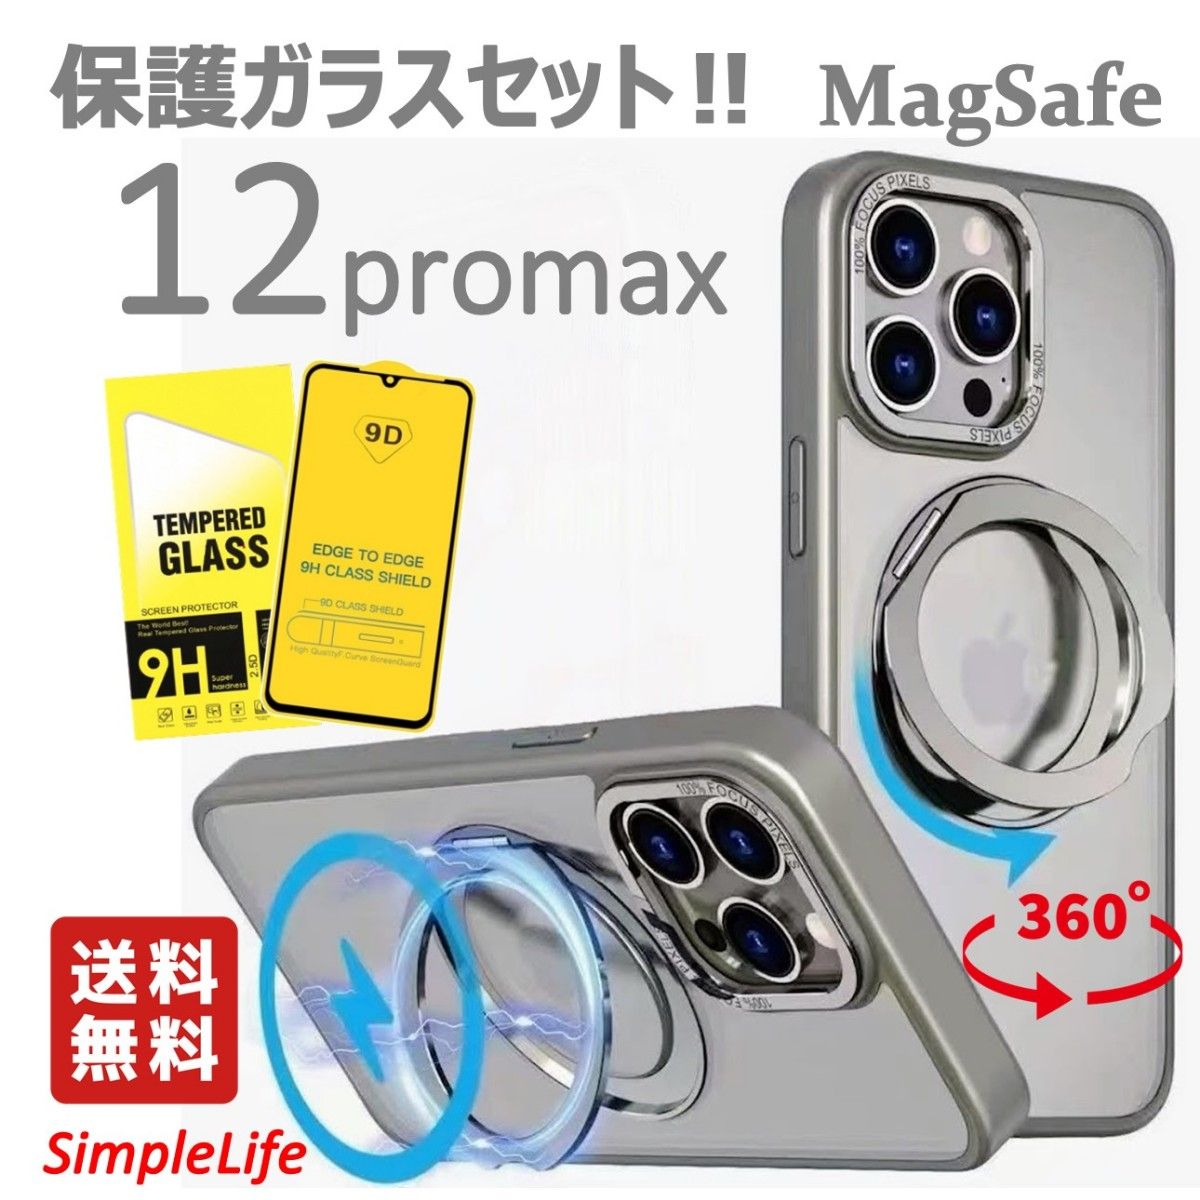 ガラスセット シルバー 青 iPhone 12 Pro Max ケース MagSafe 隠し収納 360度 スタンド